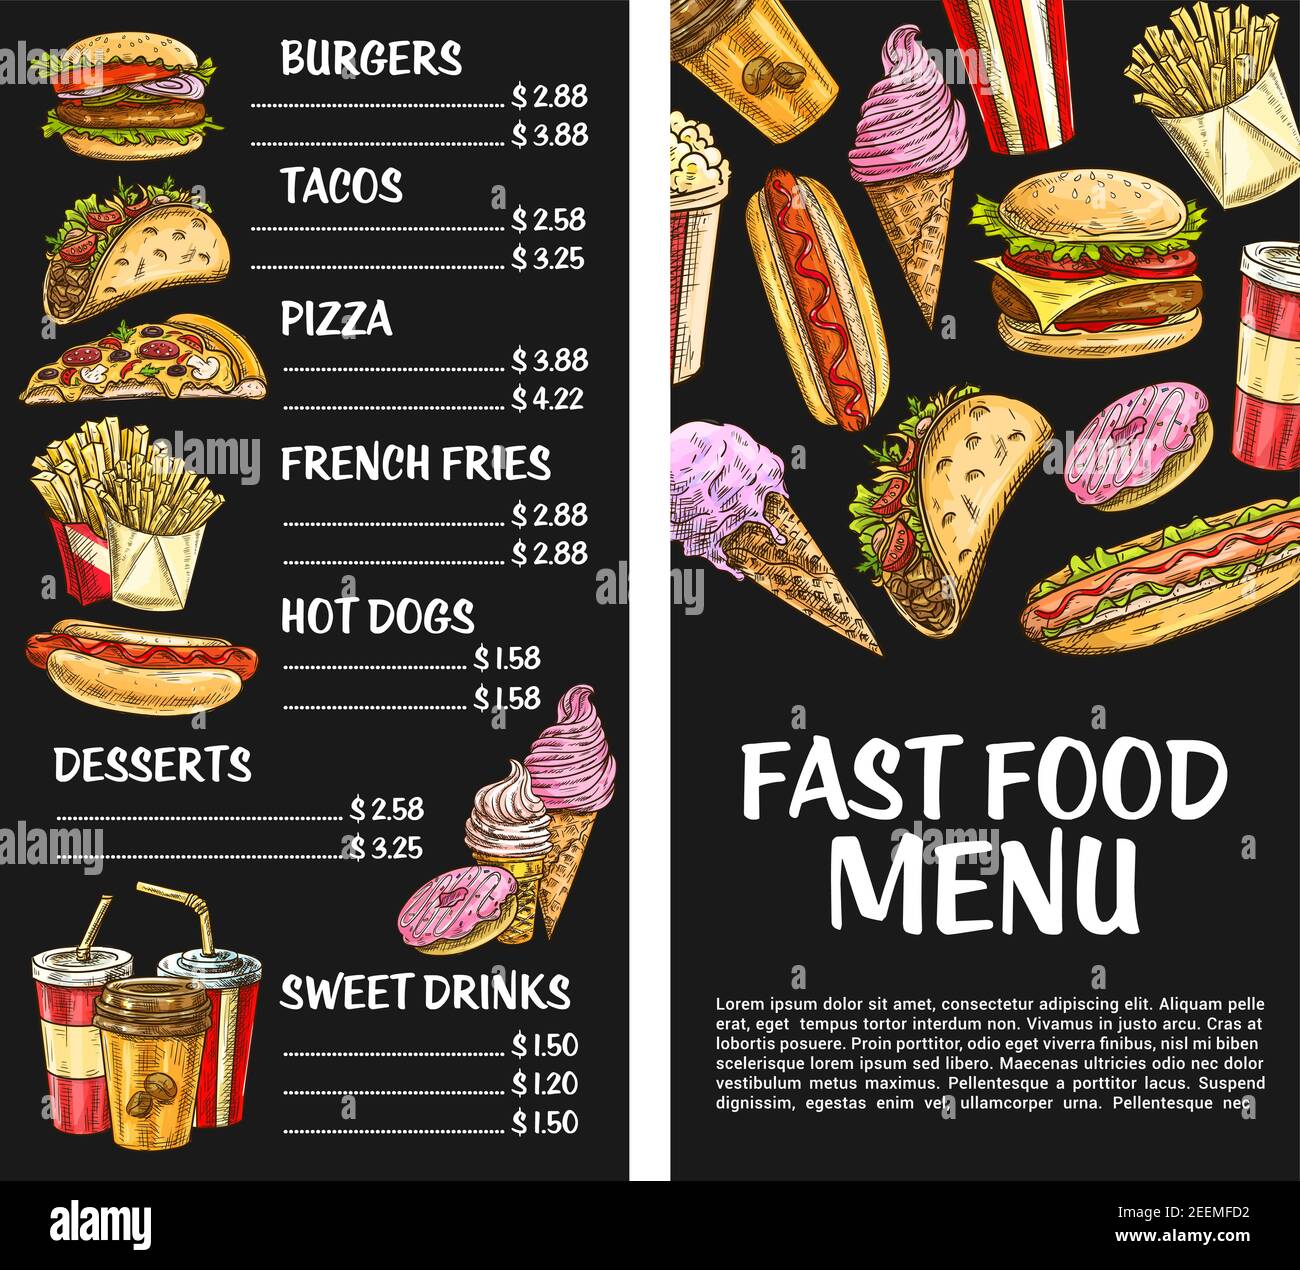 Fastfood-Menüvorlage. Vector Preis Set für Fastfood Mahlzeiten und Burger Sandwiches, Pizza oder Hot Dog und Popcorn oder Schokolade Eis Desserts, fren Stock Vektor